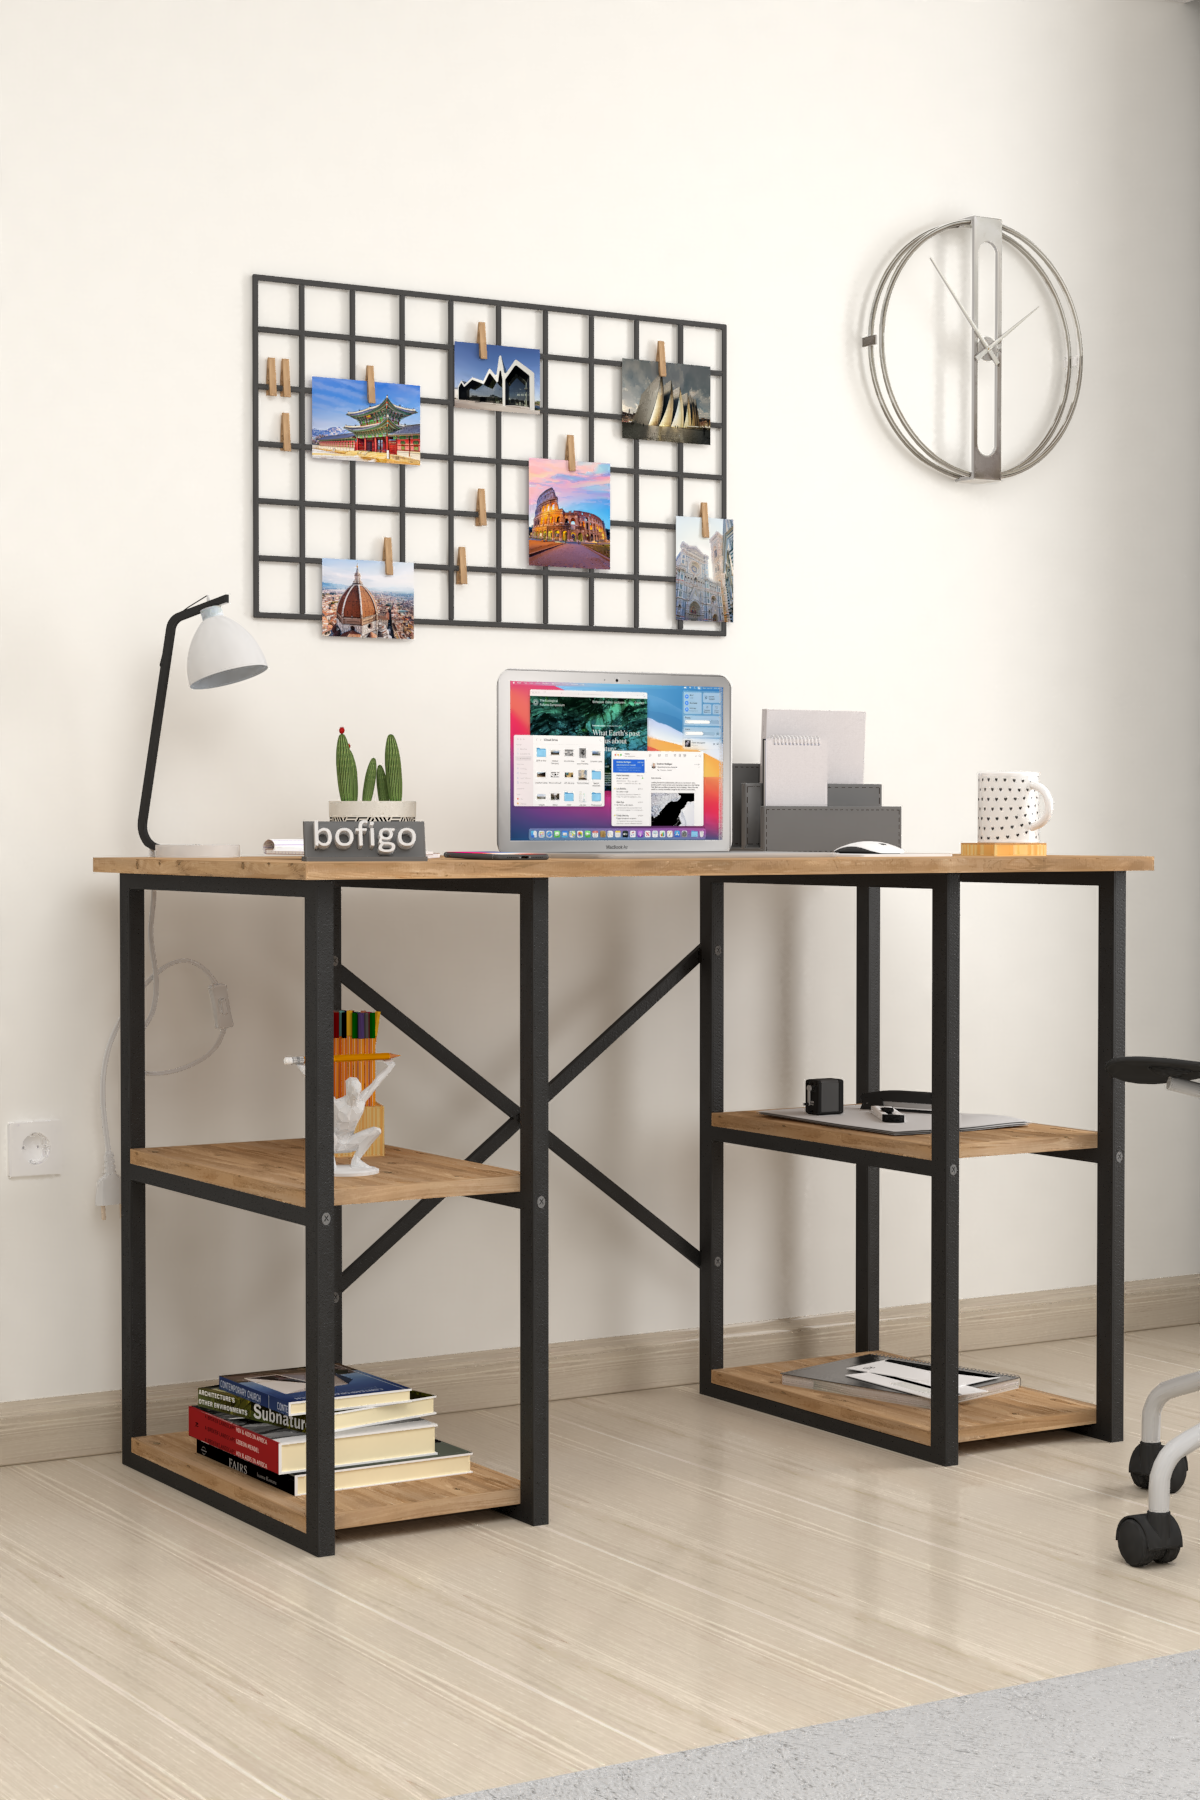 Bofigo 4 Shelf Study Desk 60x120 cm  Pine